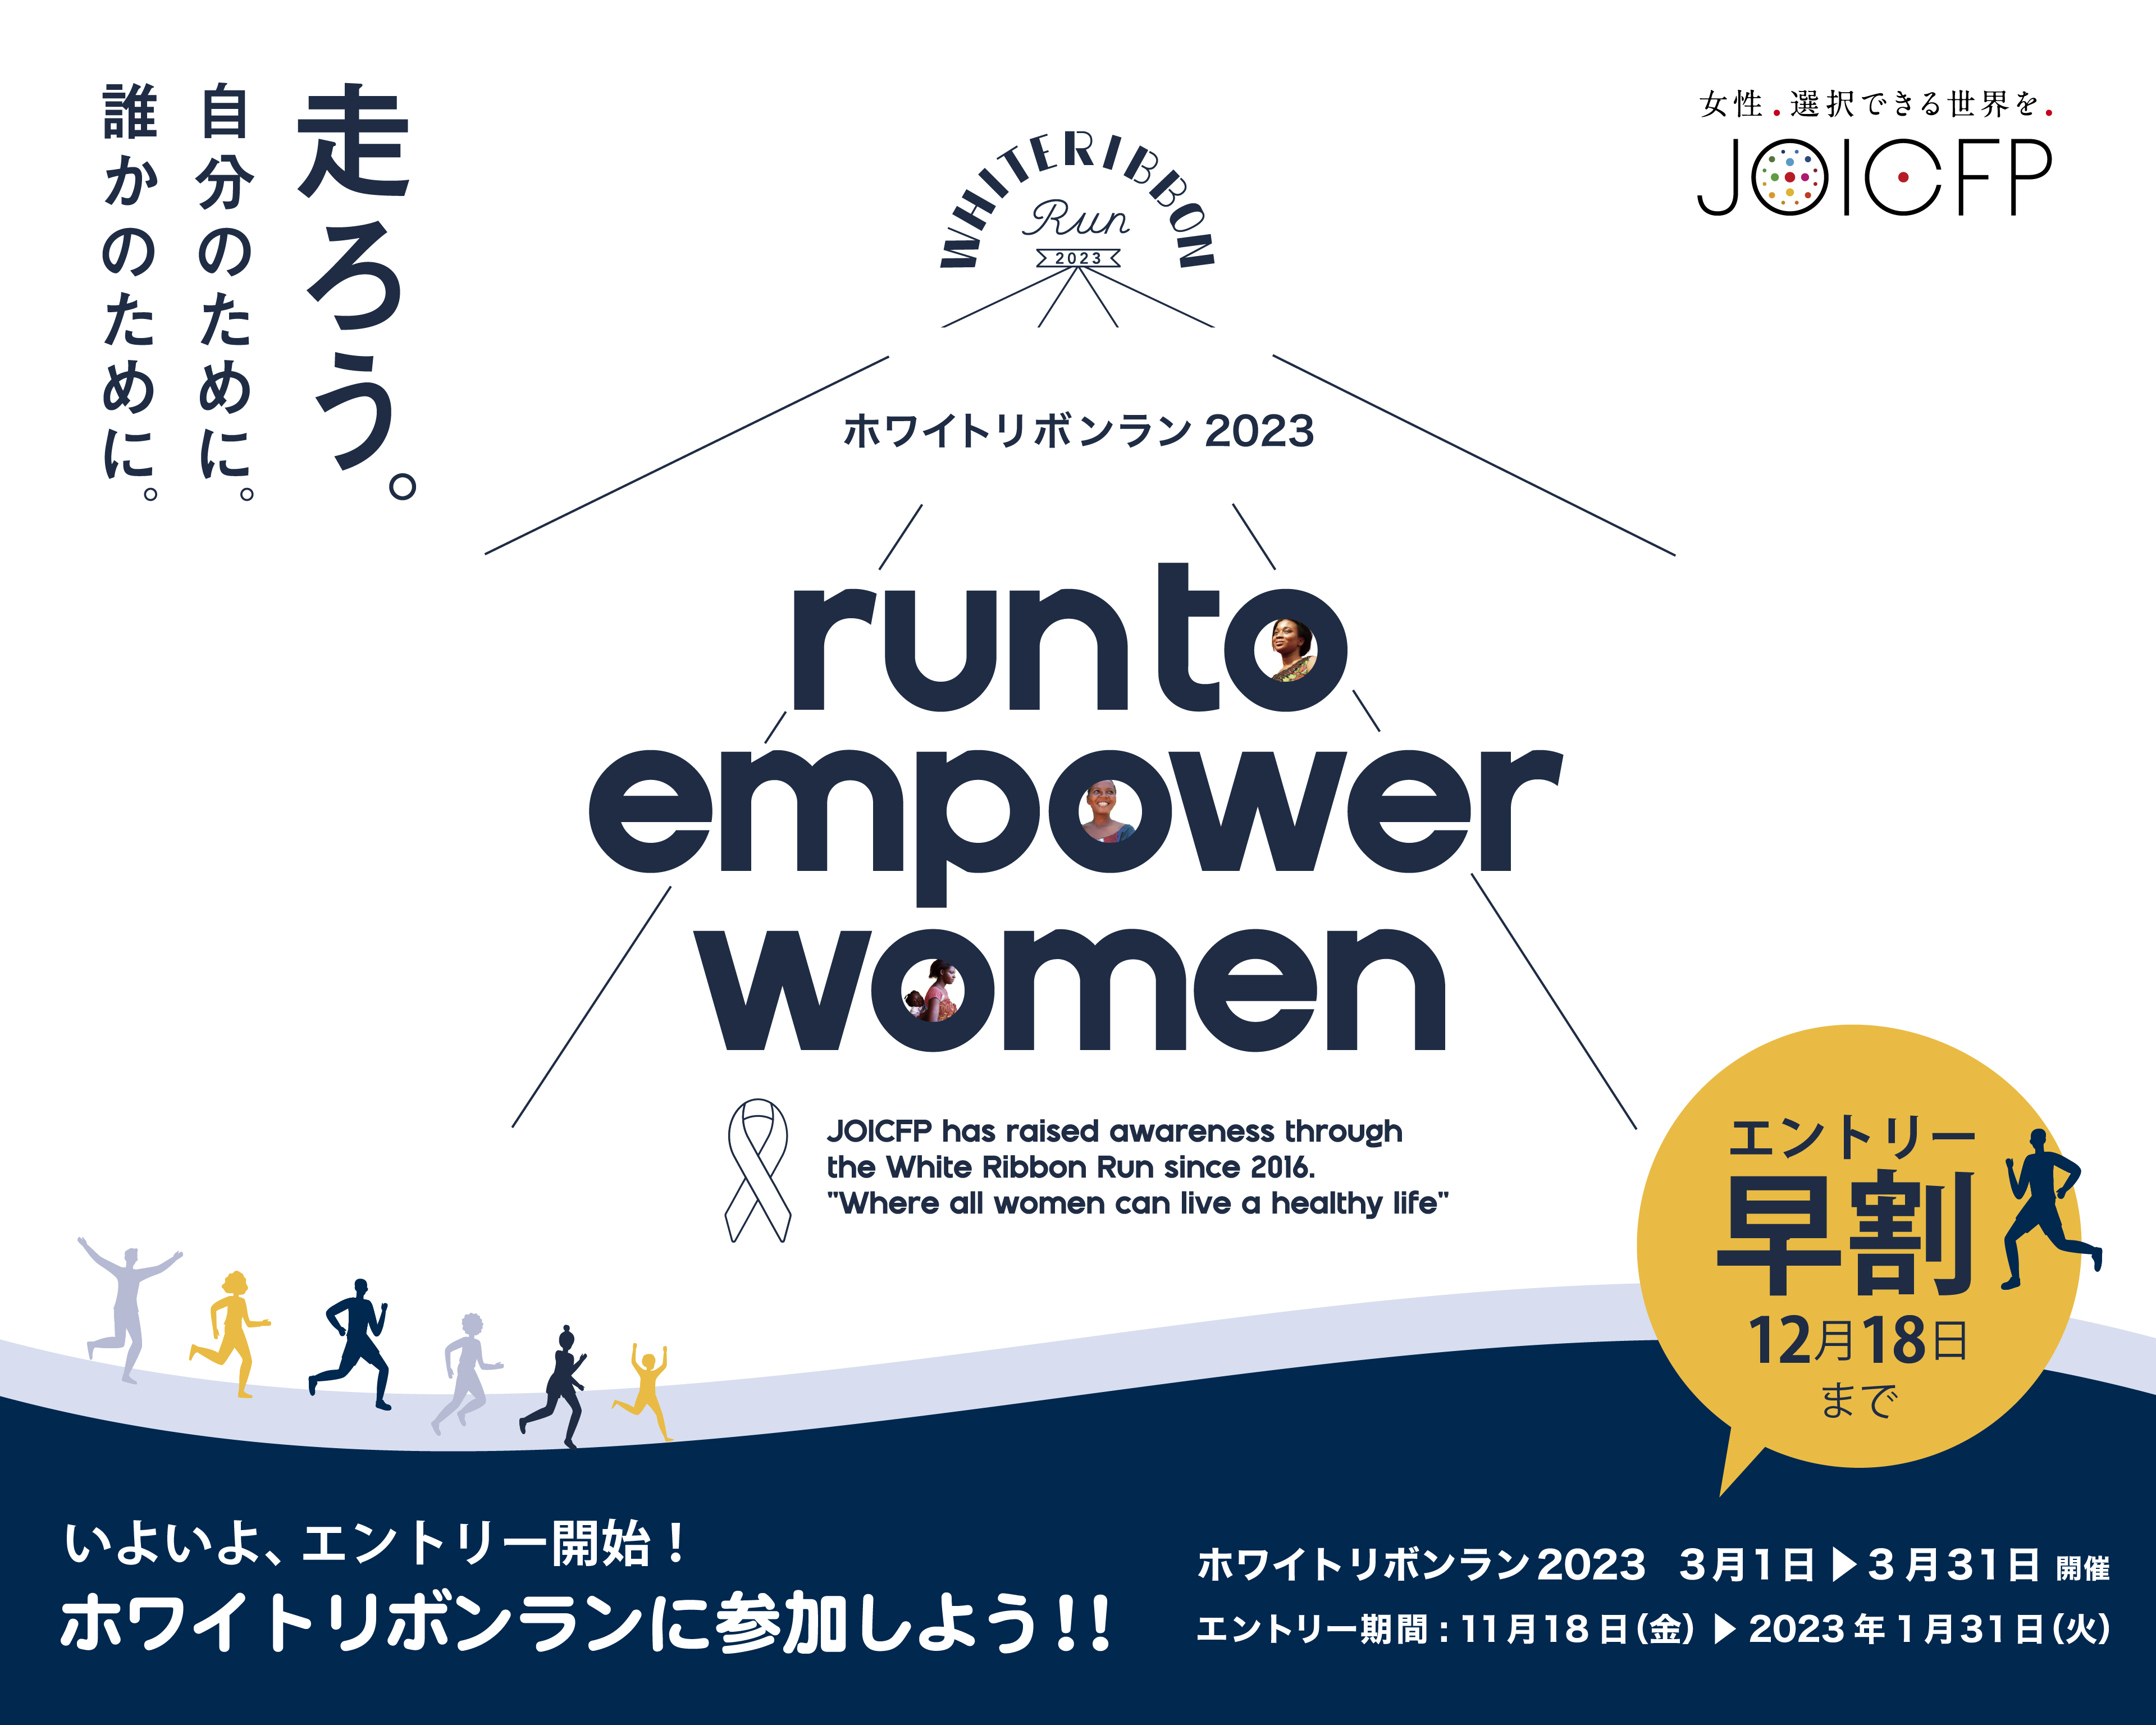 23年3月の国際女性デーは Run To Empower Women ホワイトリボンラン23 エントリー 受付スタート 公益財団法人ジョイセフのプレスリリース